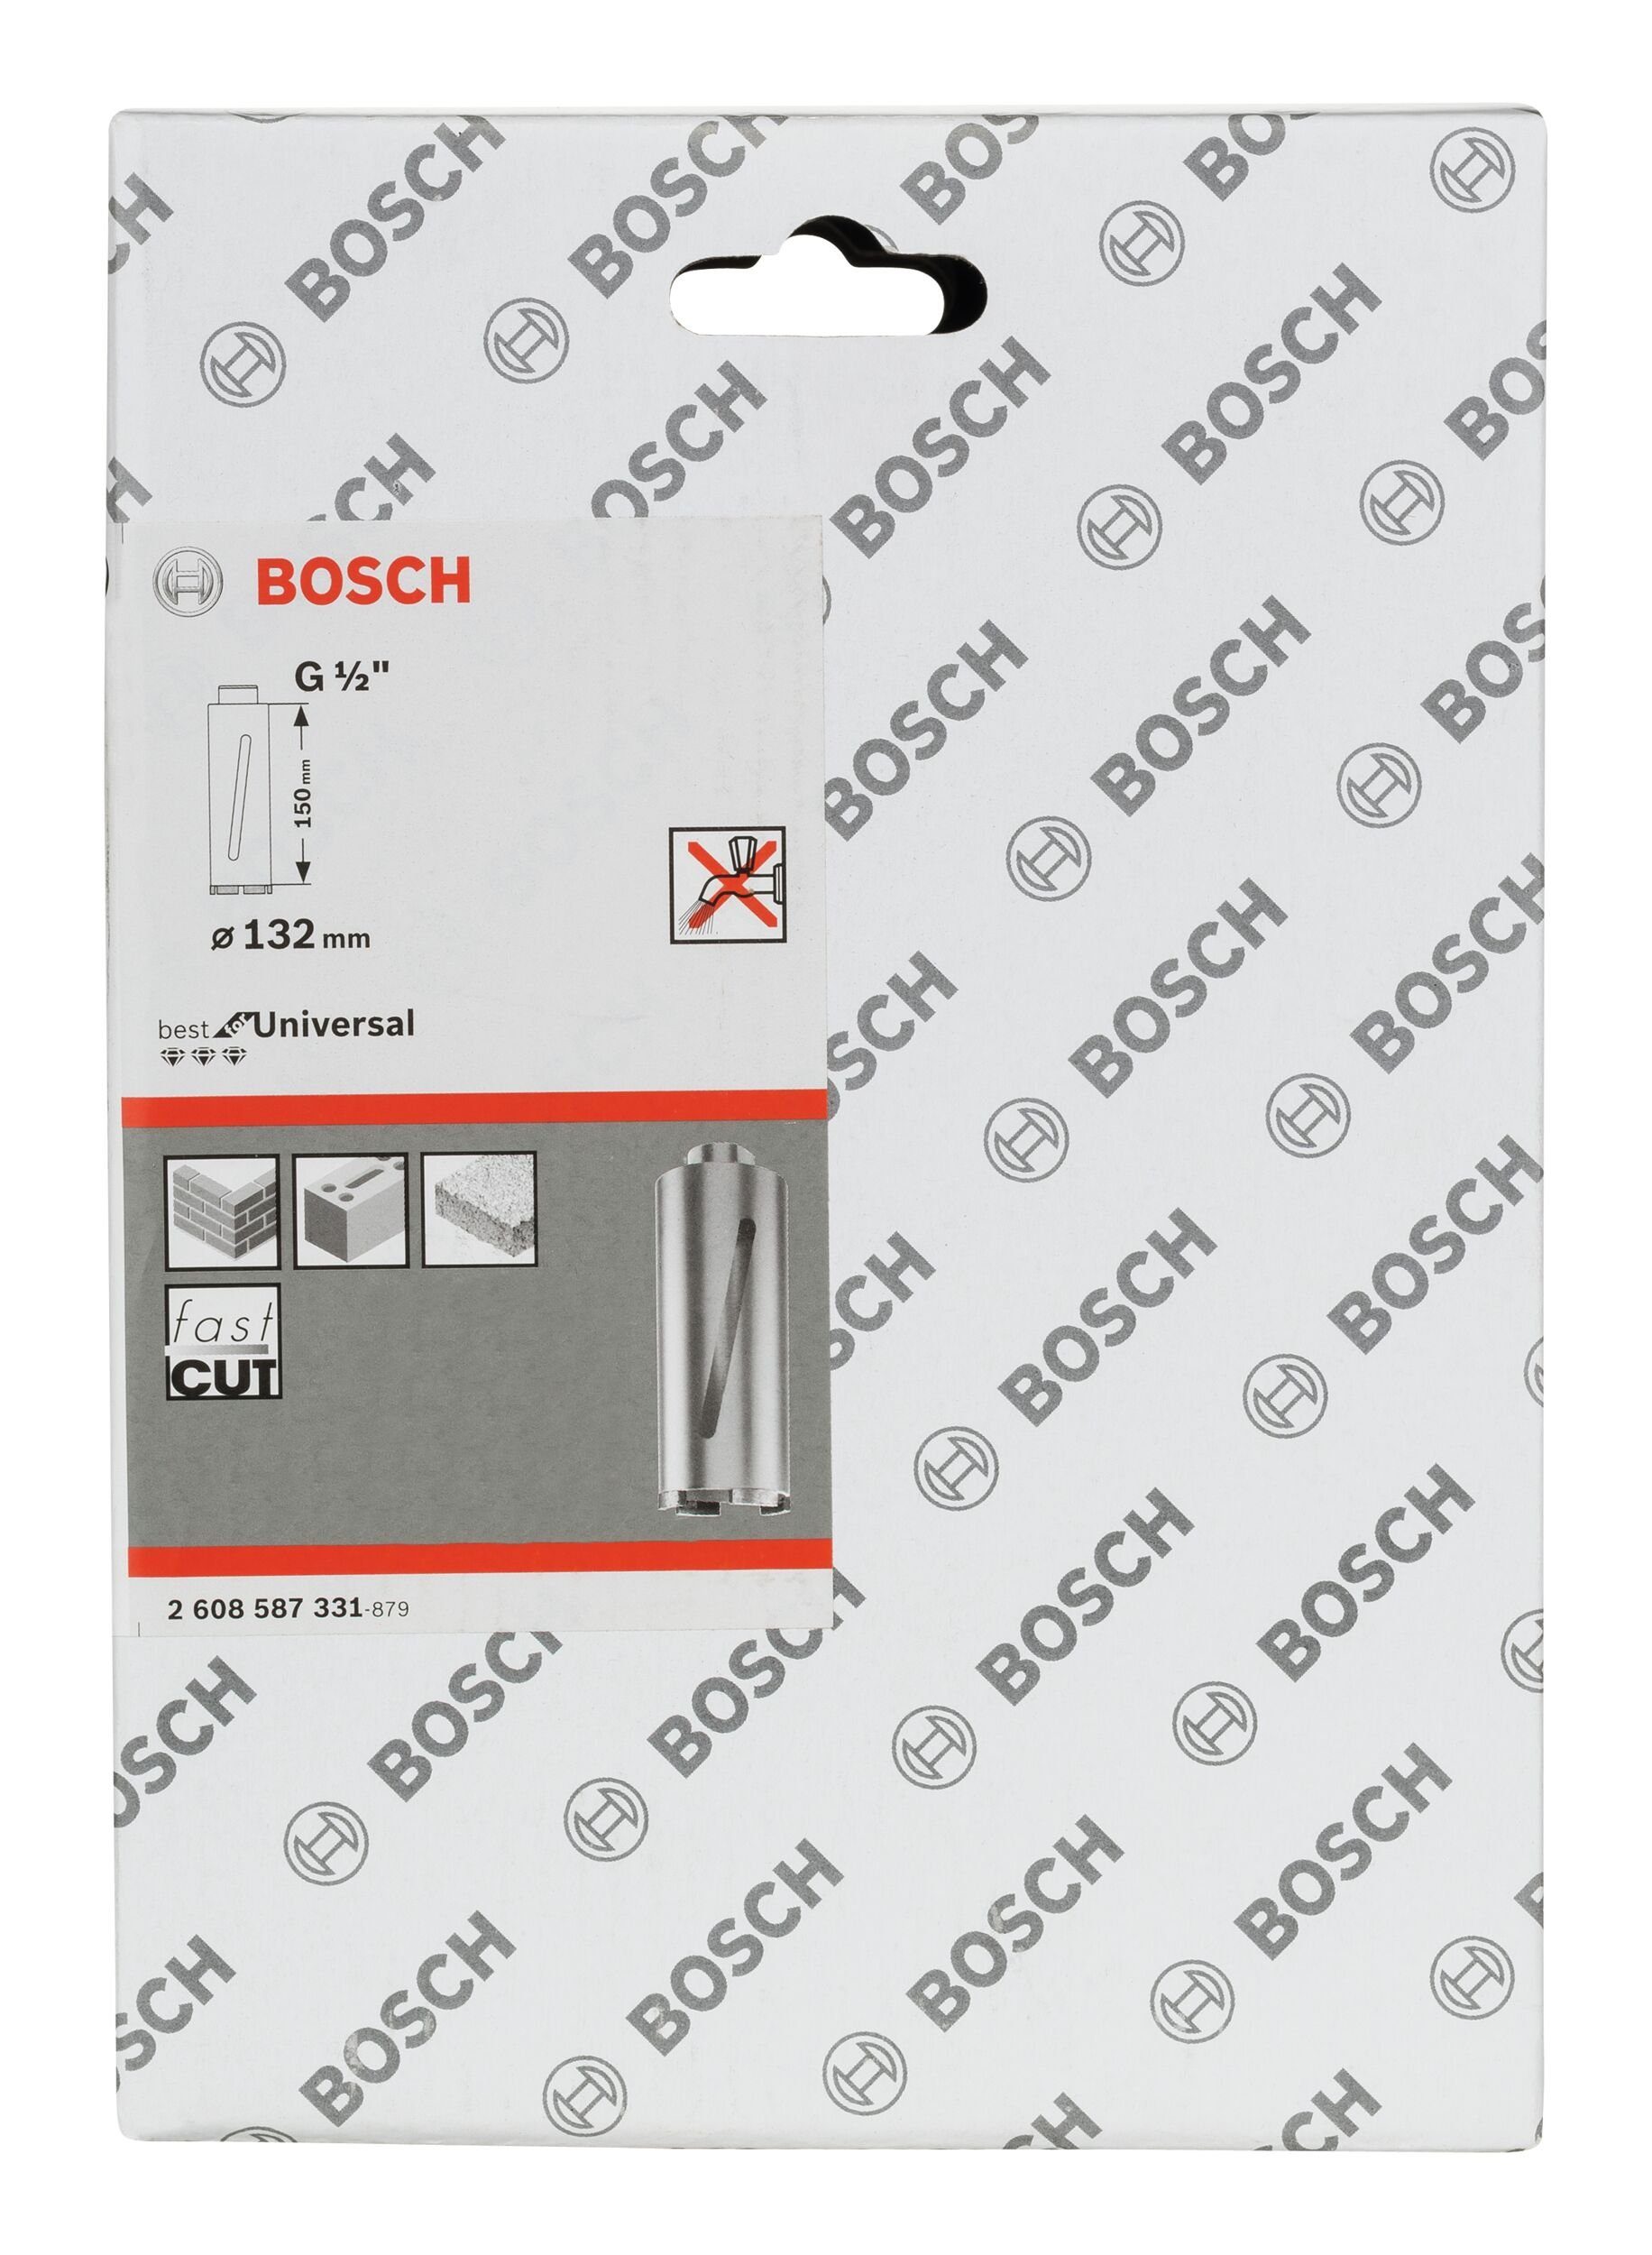 Bohrkrone, Segmente Diamanttrockenbohrkrone G1/2" 132 Universal for Best BOSCH x 6 Ø - mm, 132